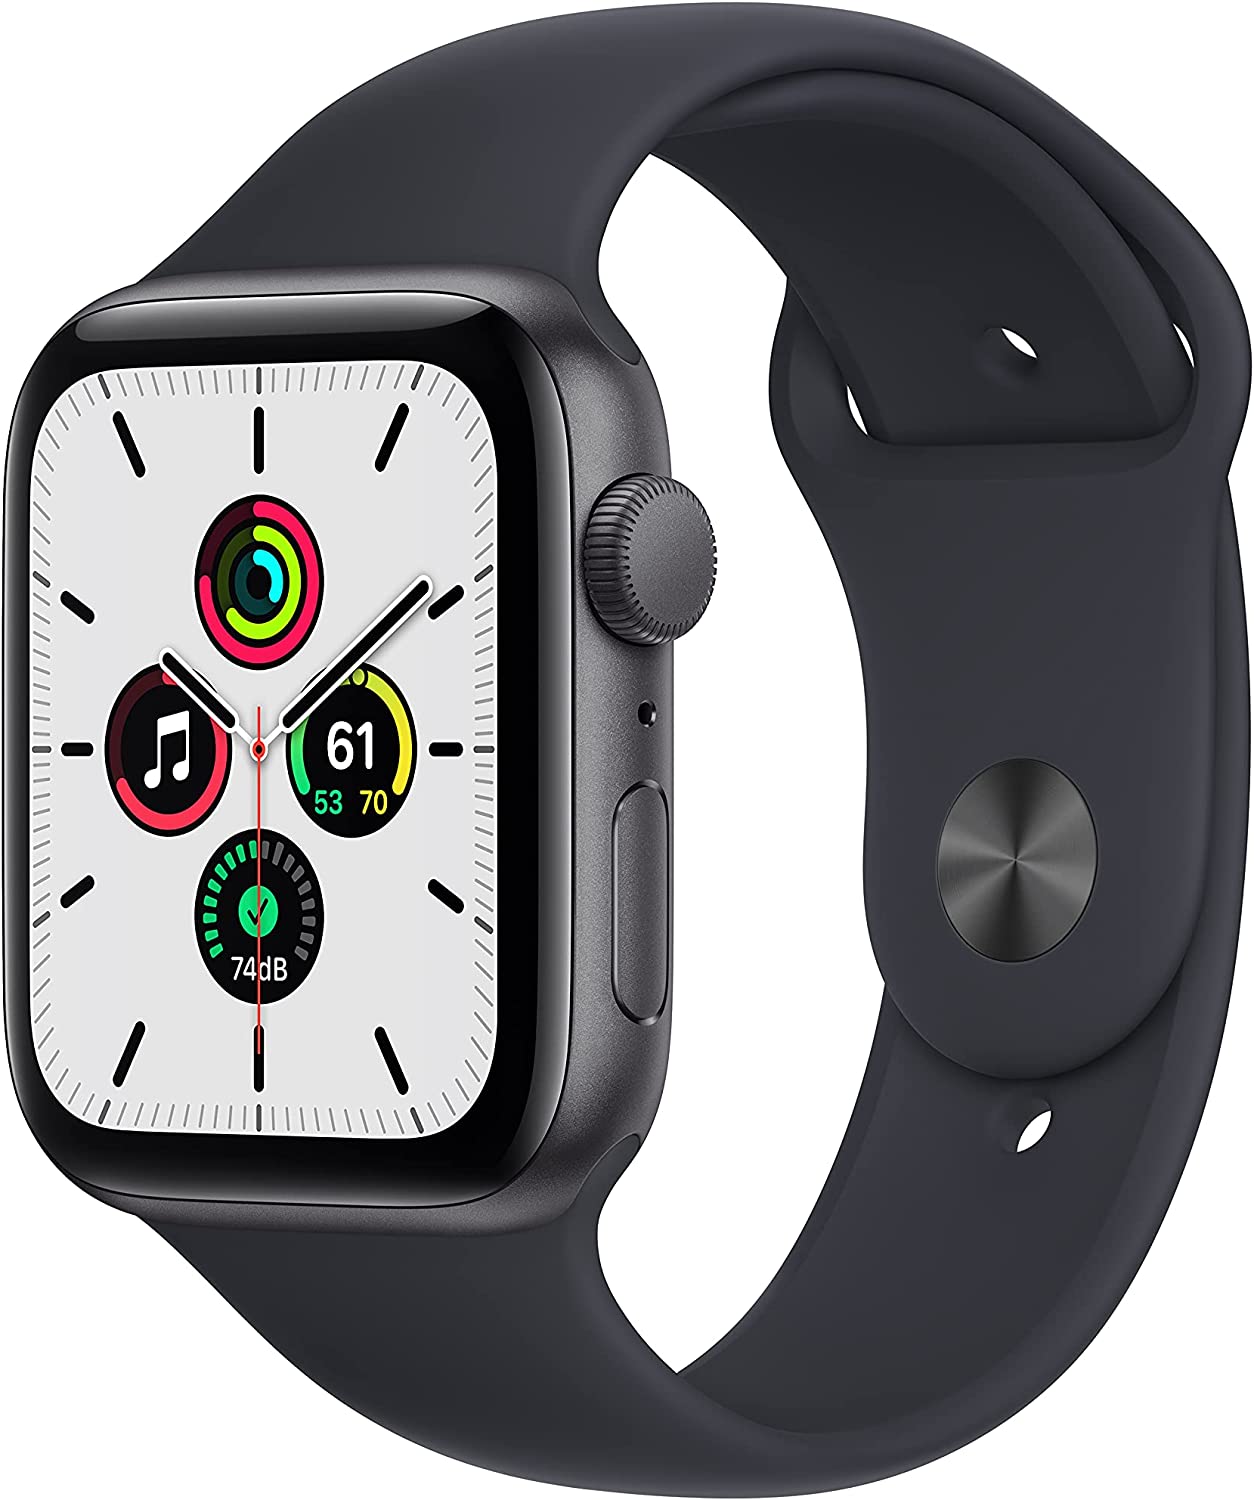 Apple Watch SE vs 7